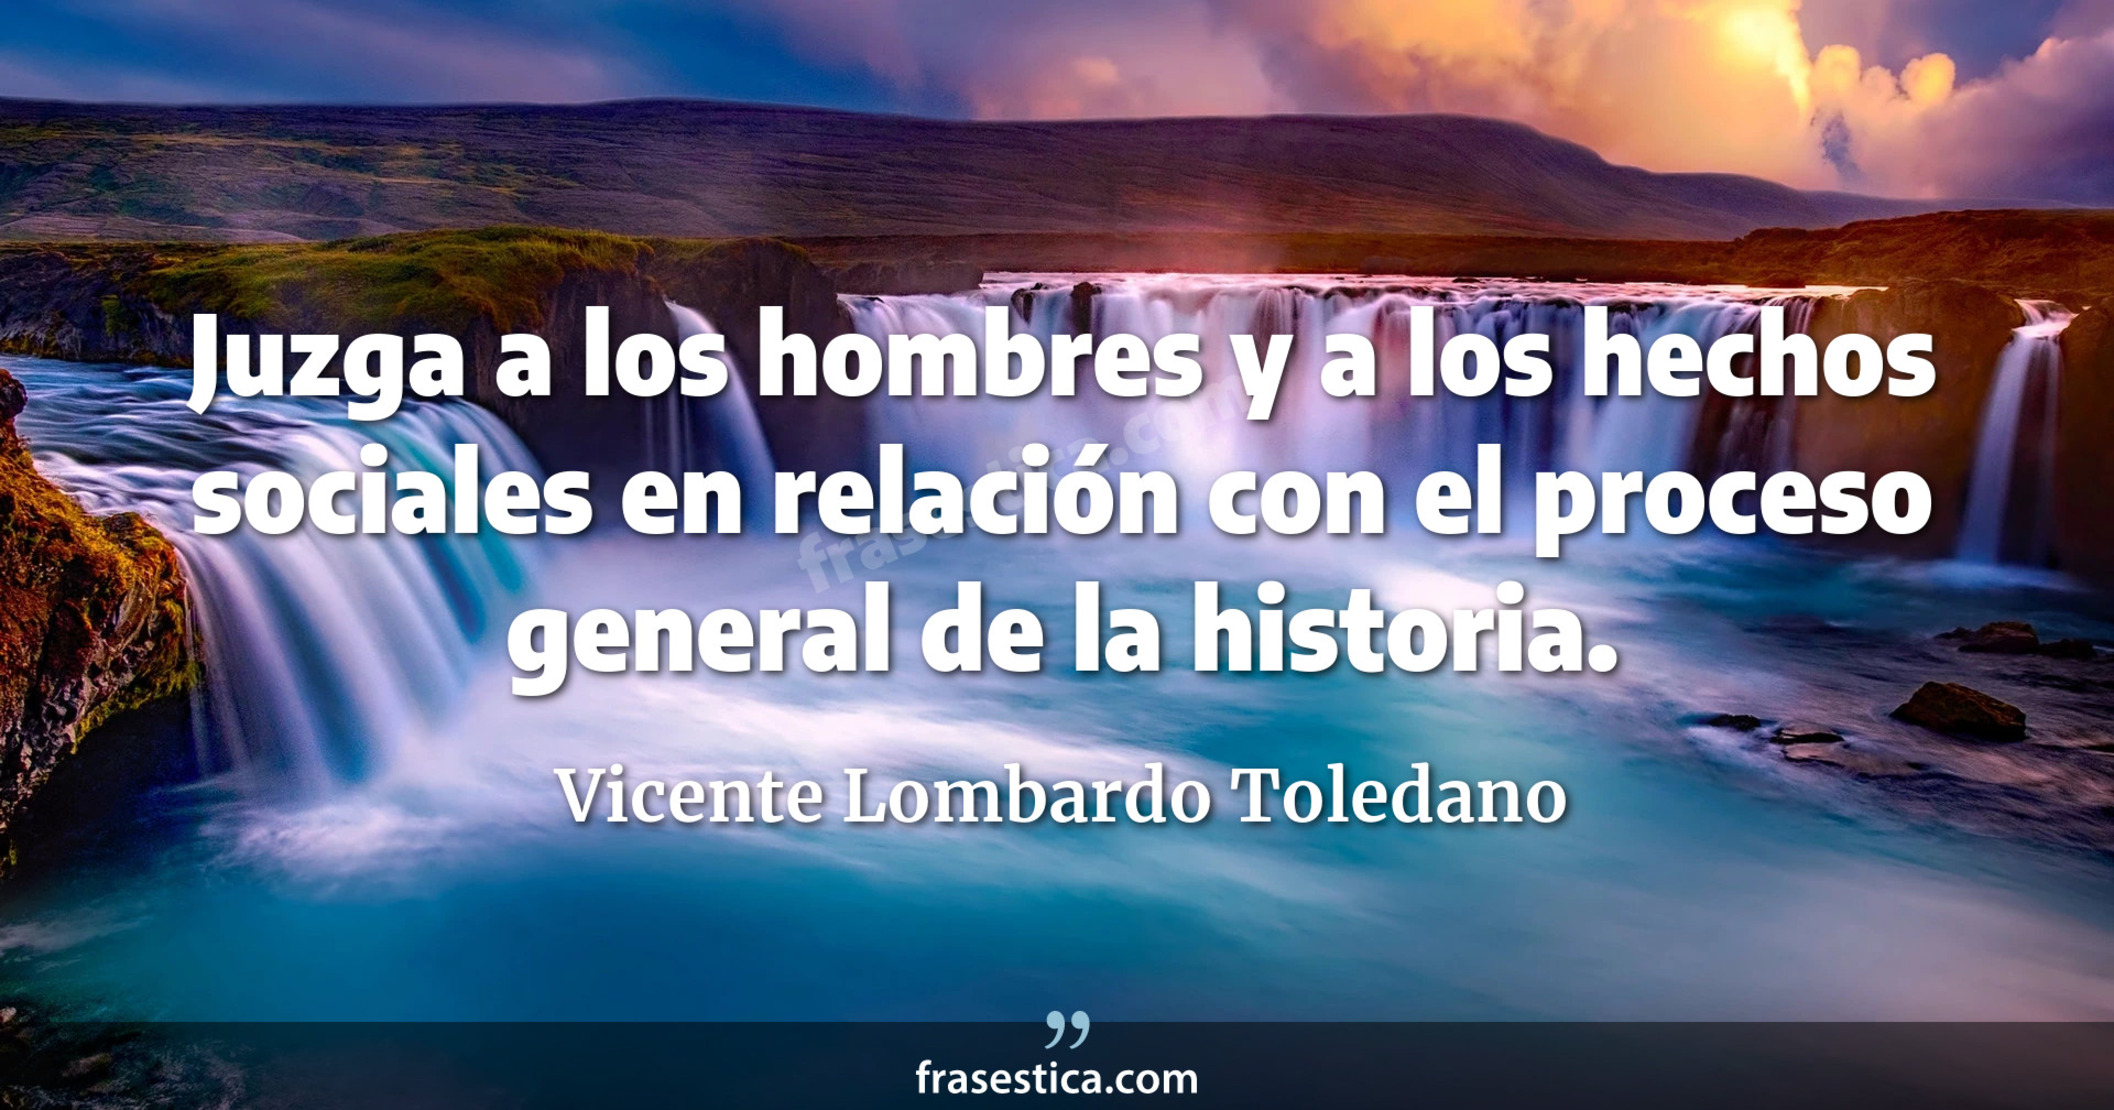 Juzga a los hombres y a los hechos sociales en relación con el proceso general de la historia. - Vicente Lombardo Toledano